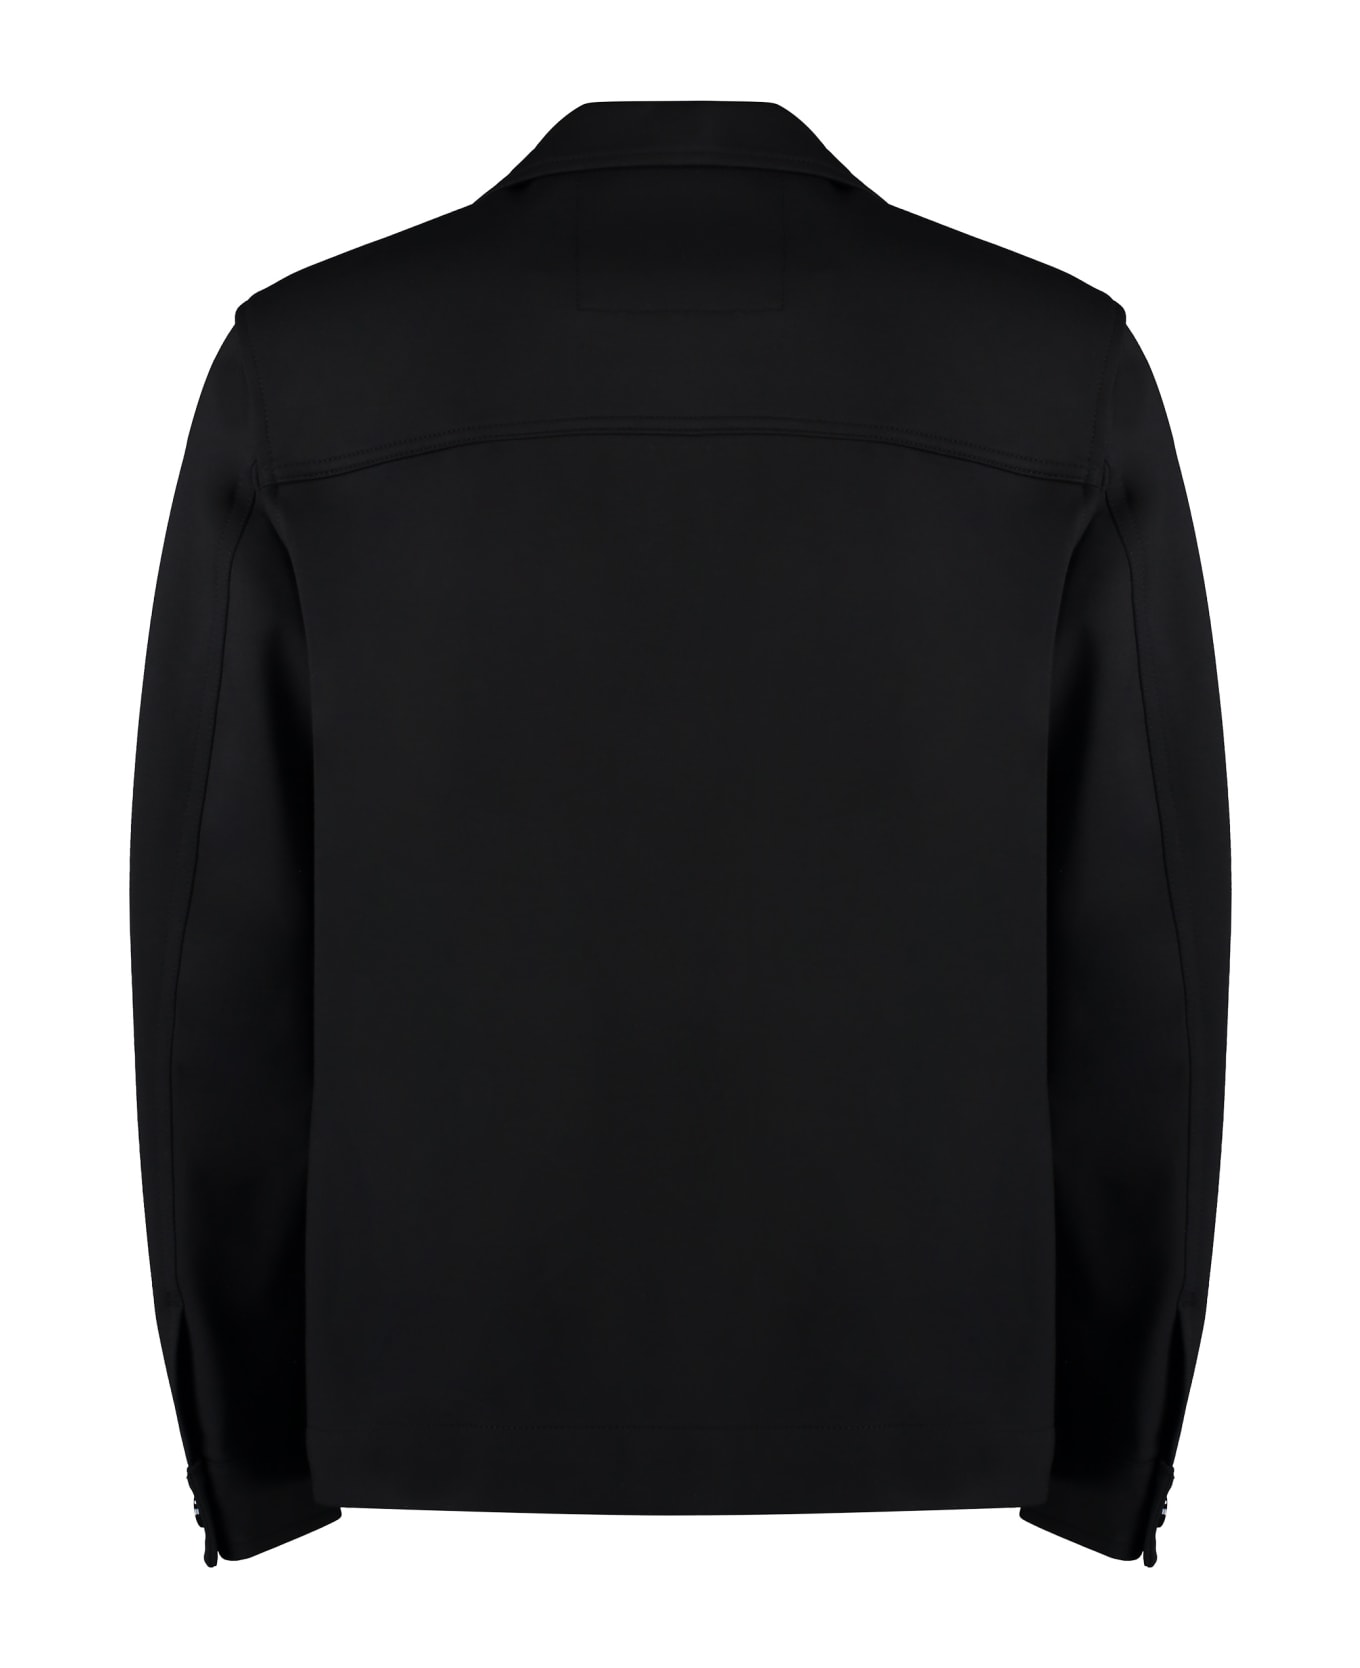 Hugo Boss Fabric Overshirt - black